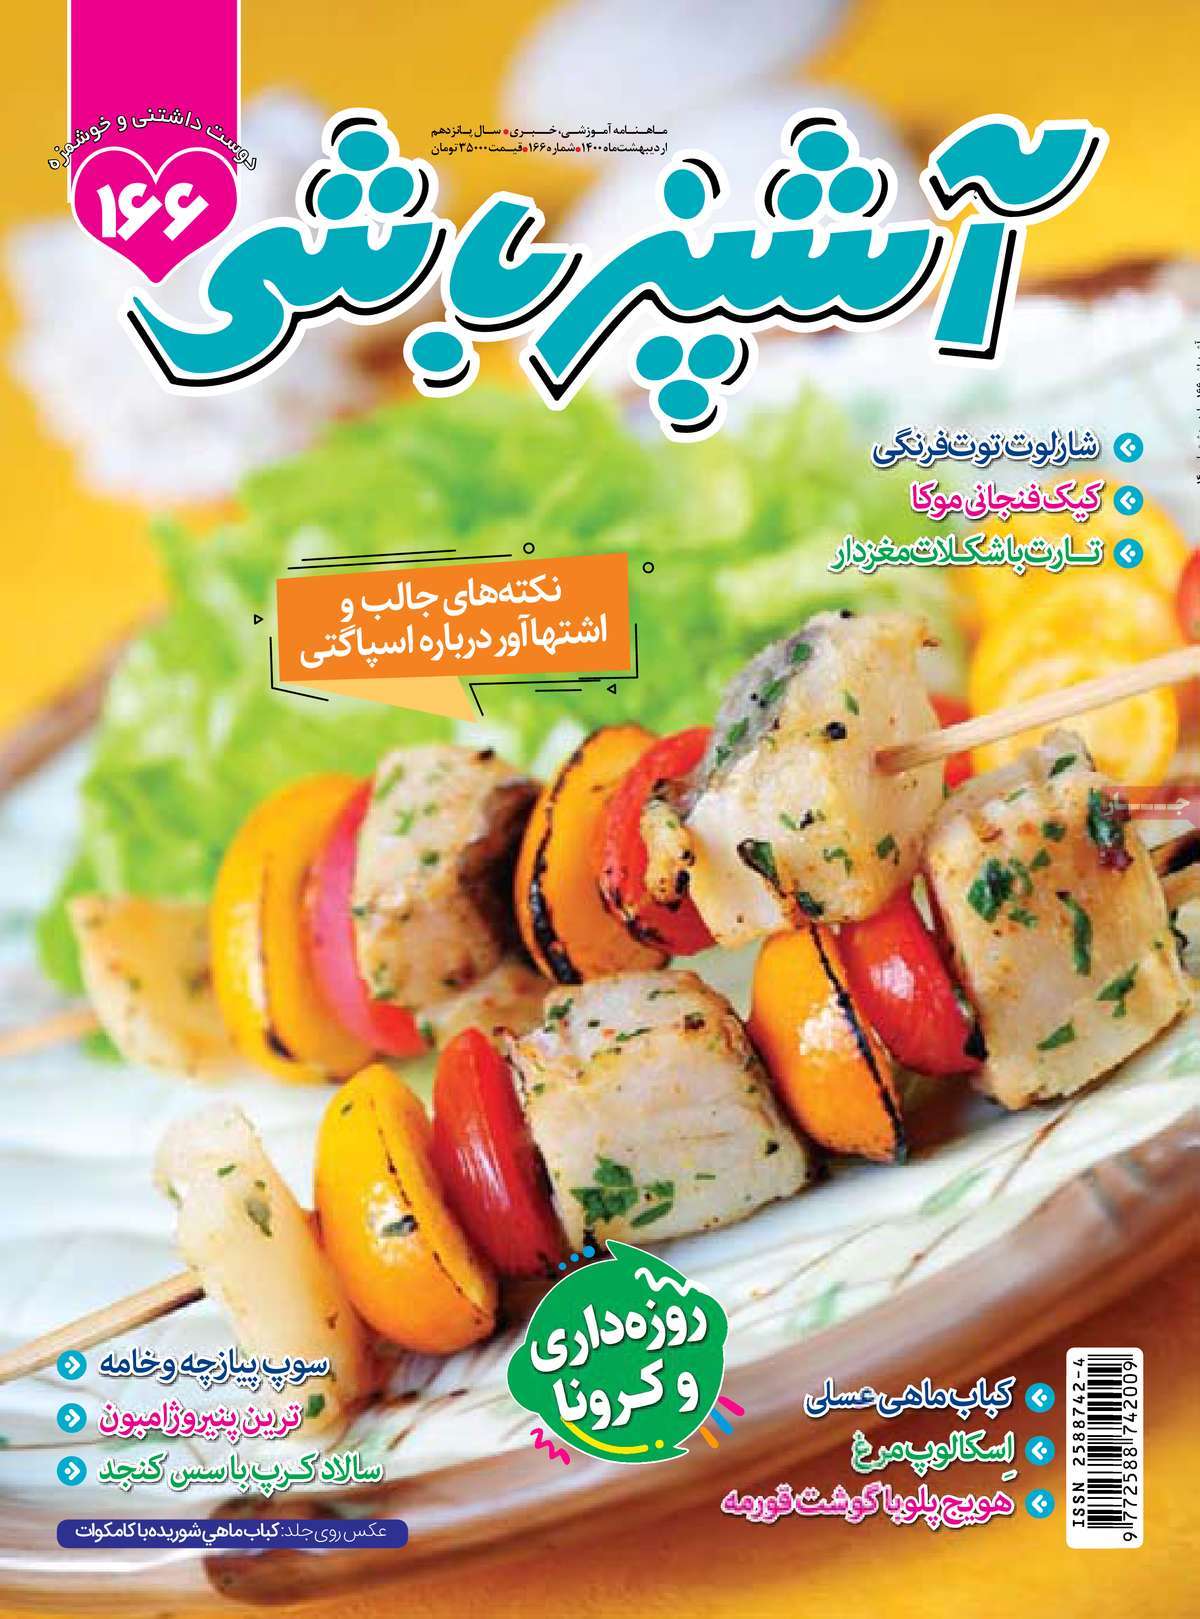 مجله آشپزباشی